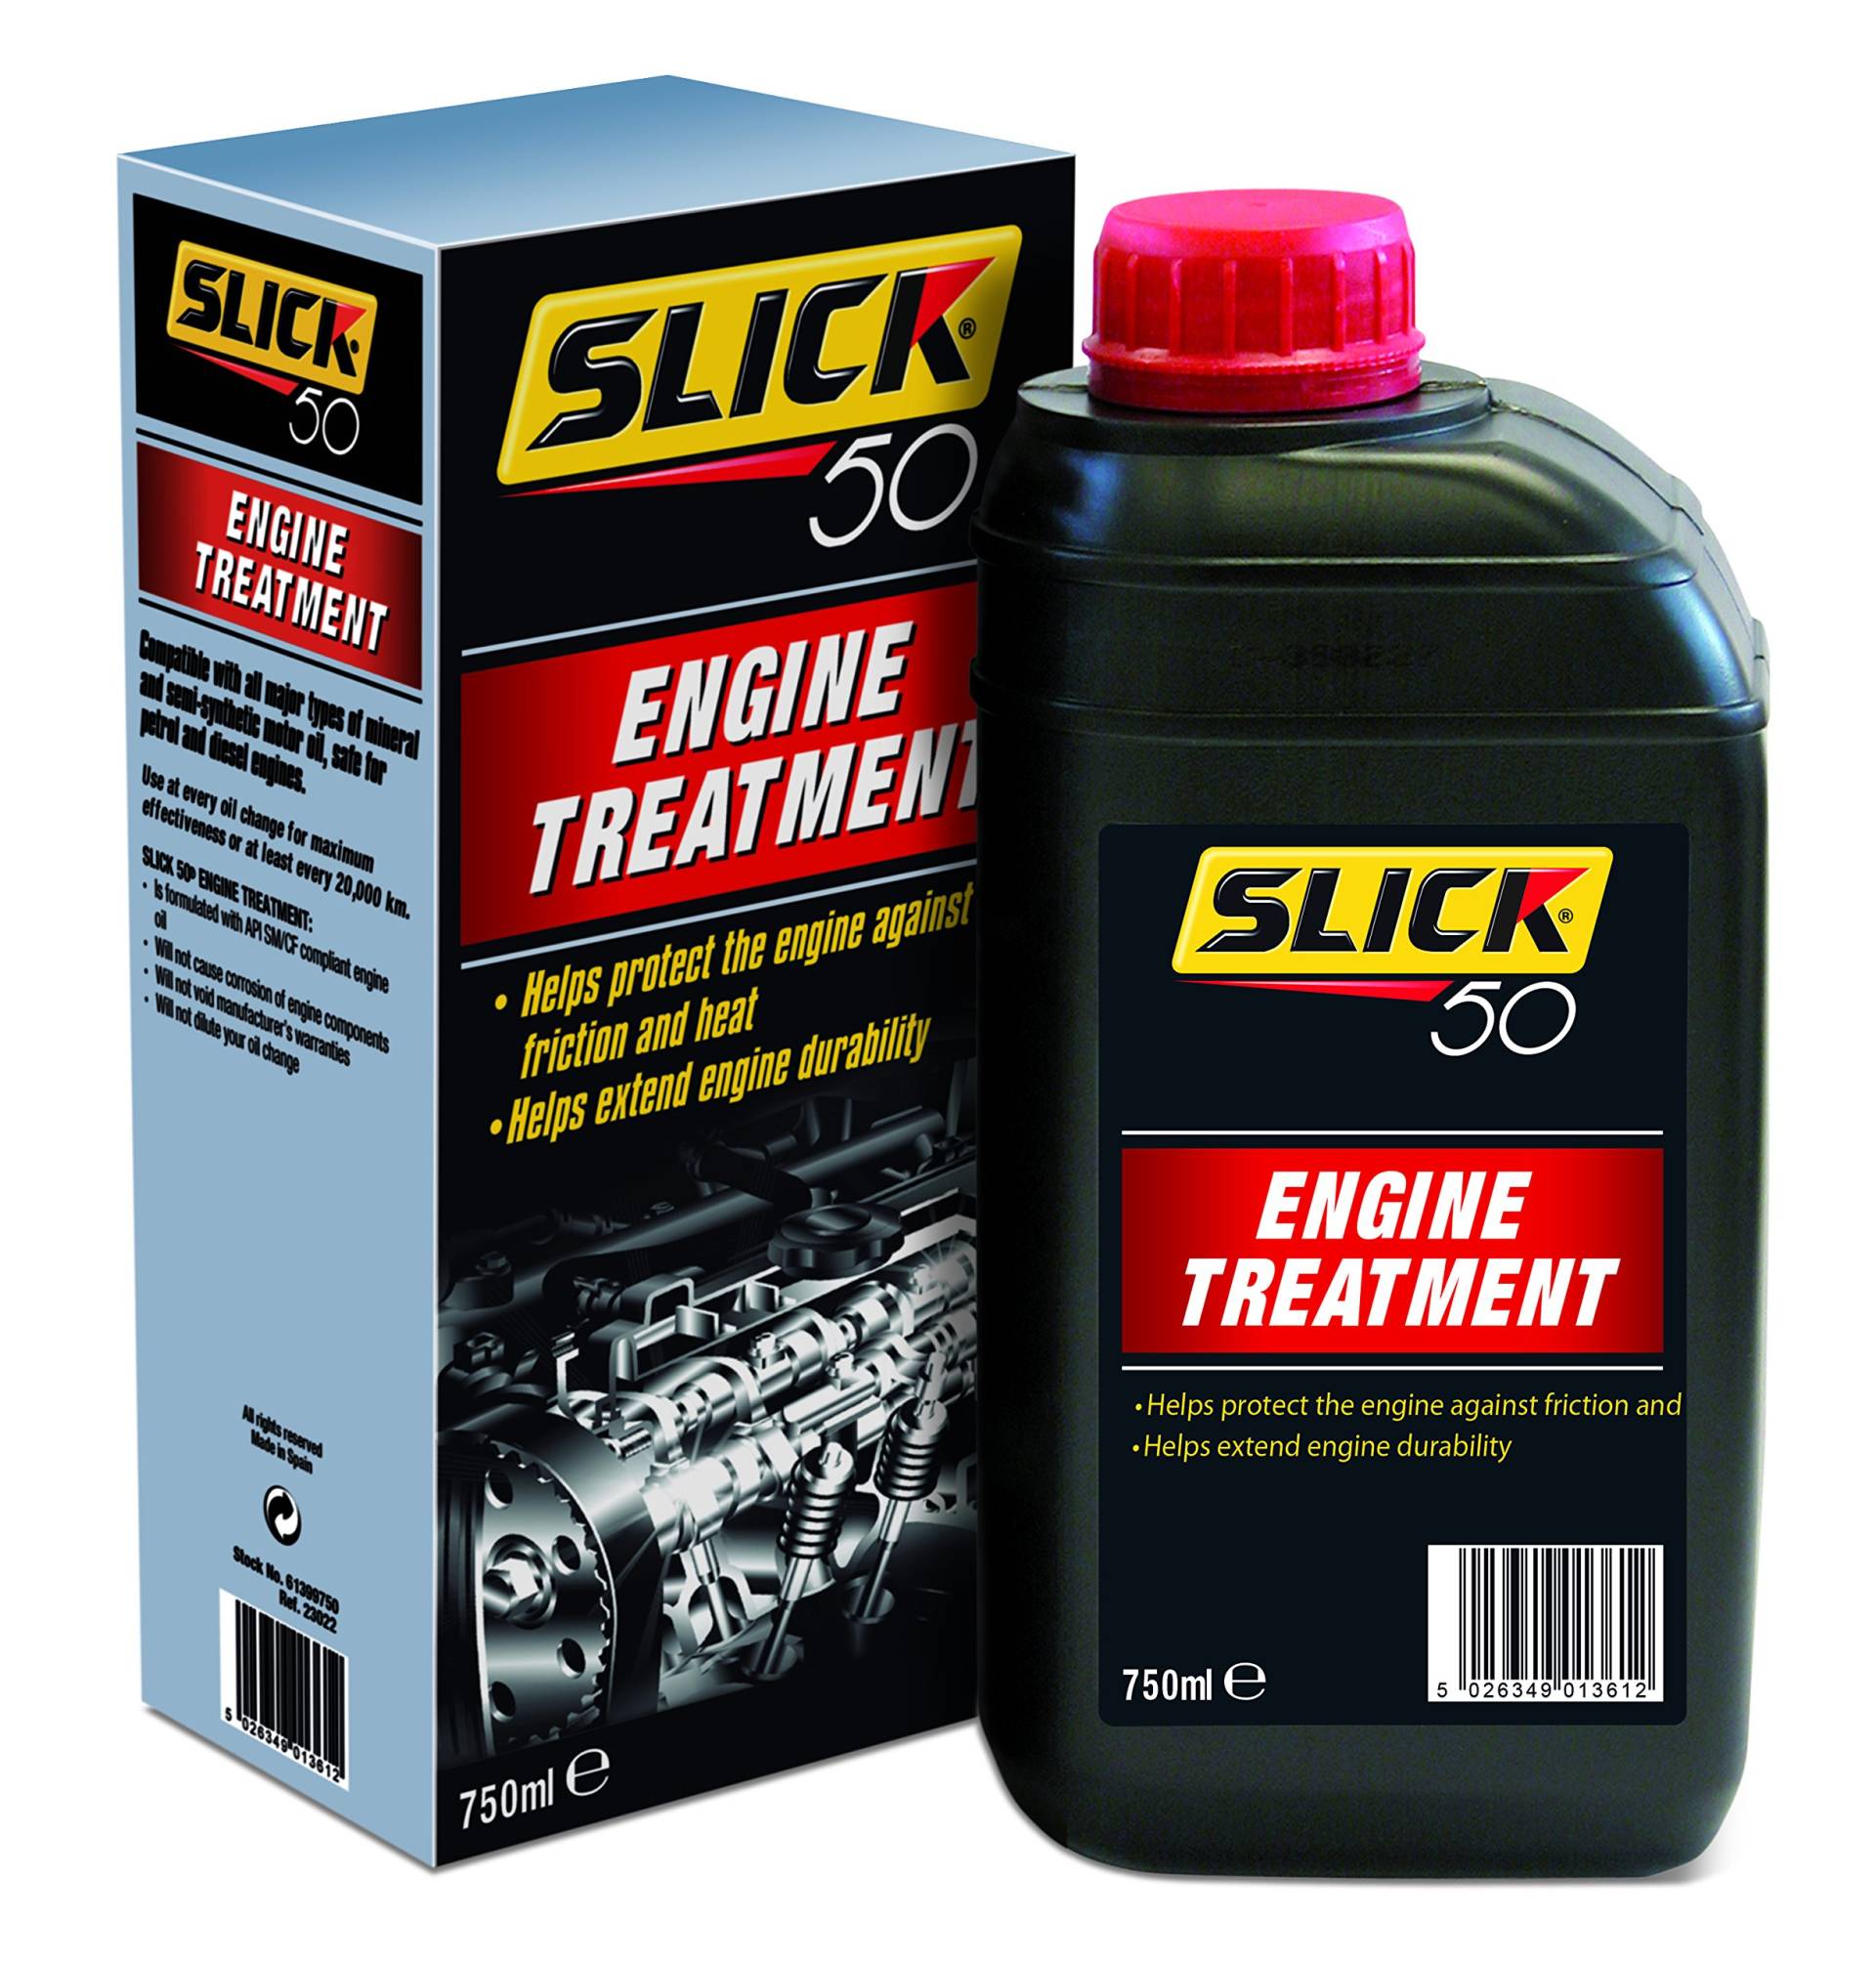 Clarik Slick 50 Motor Behandlung 61399500 Für Motor, Benzin/Diesel Motoren von Slick 50